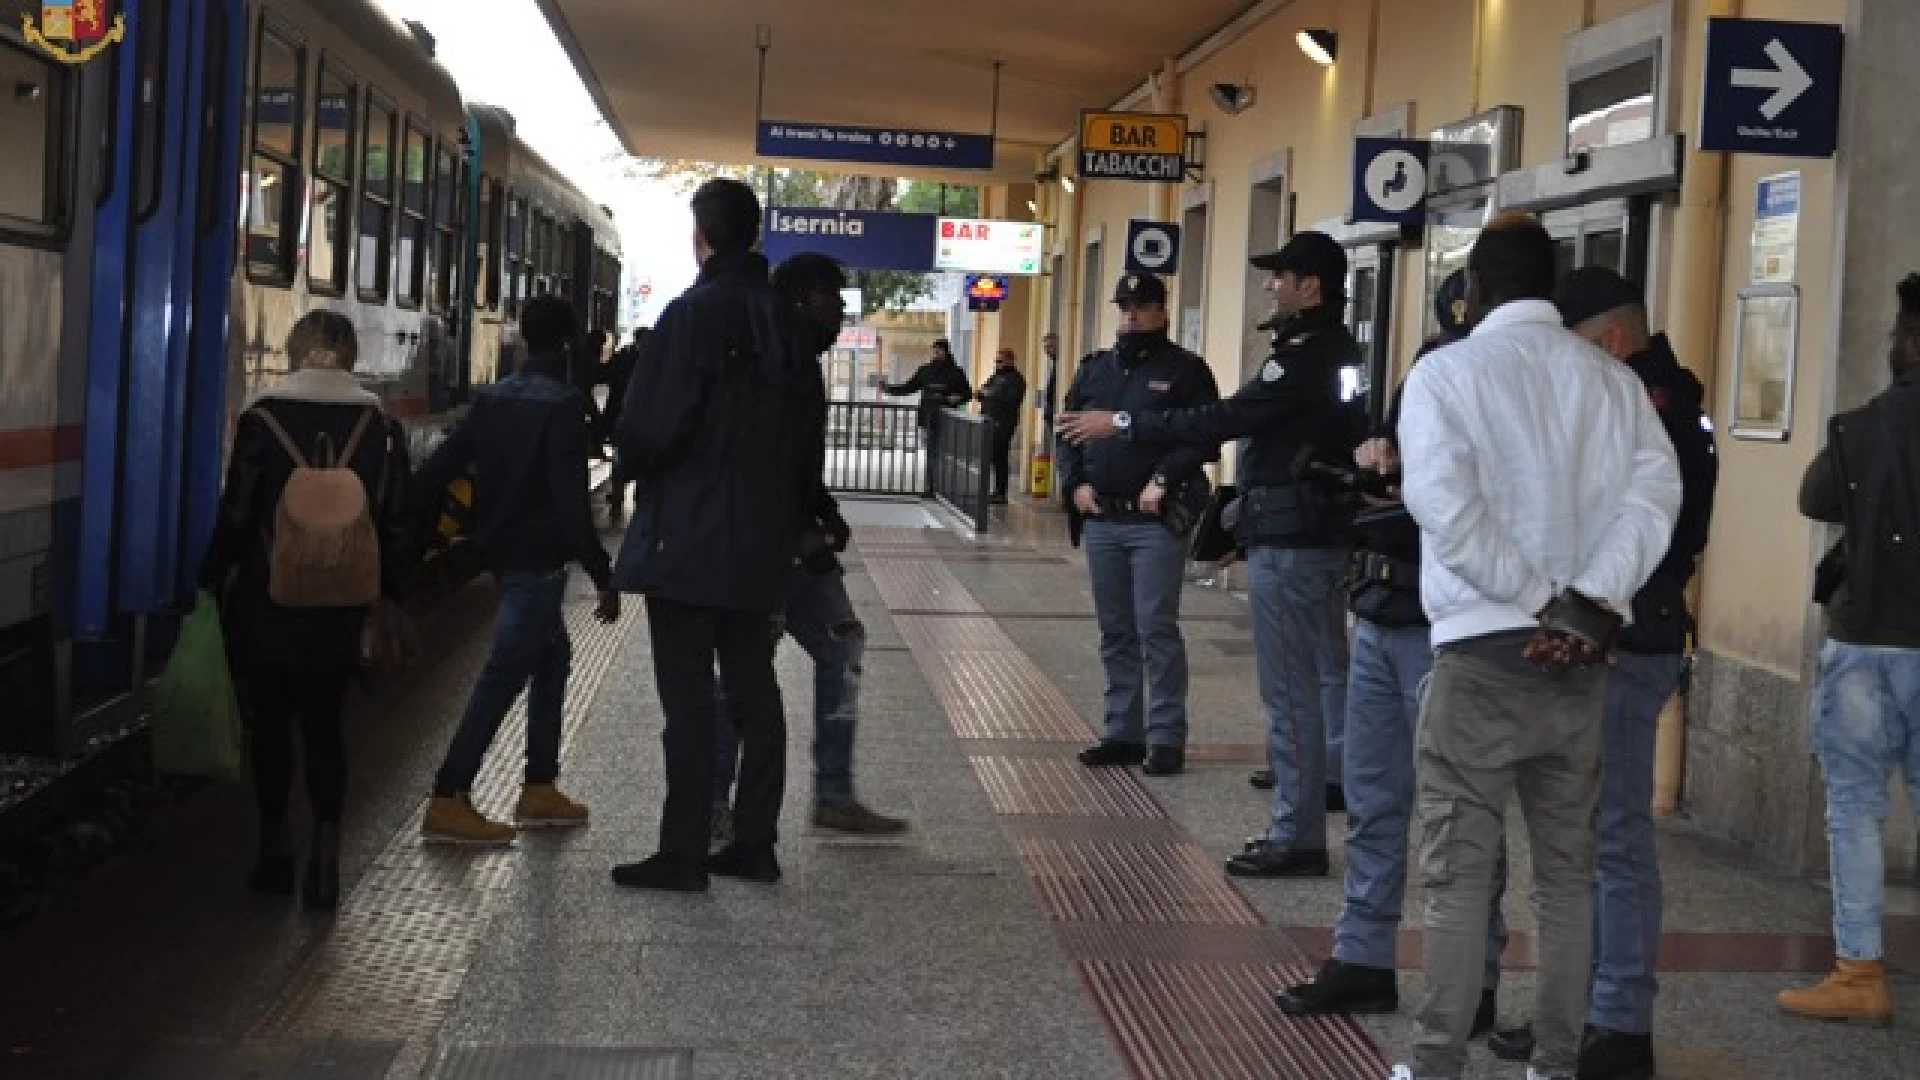 Isernia: la Polizia di Stato predispone controlli mirati e serrati alla stazione ferroviaria. Guarda il video